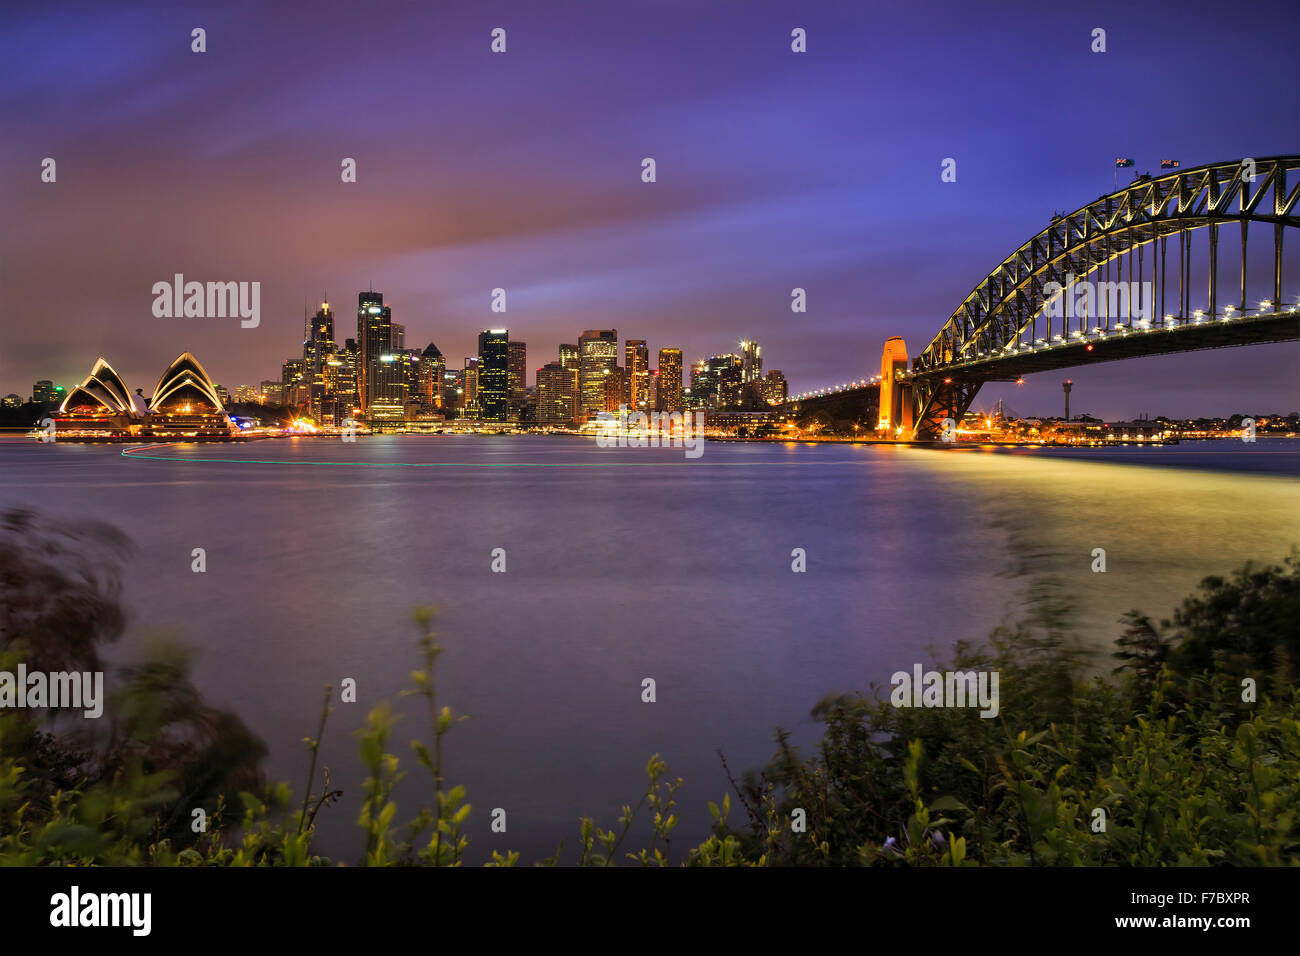 Los hitos de la ciudad de Sydney CDB cruzando el puerto con arco del puente, rascacielos y casa al atardecer con iluminación completa Foto de stock